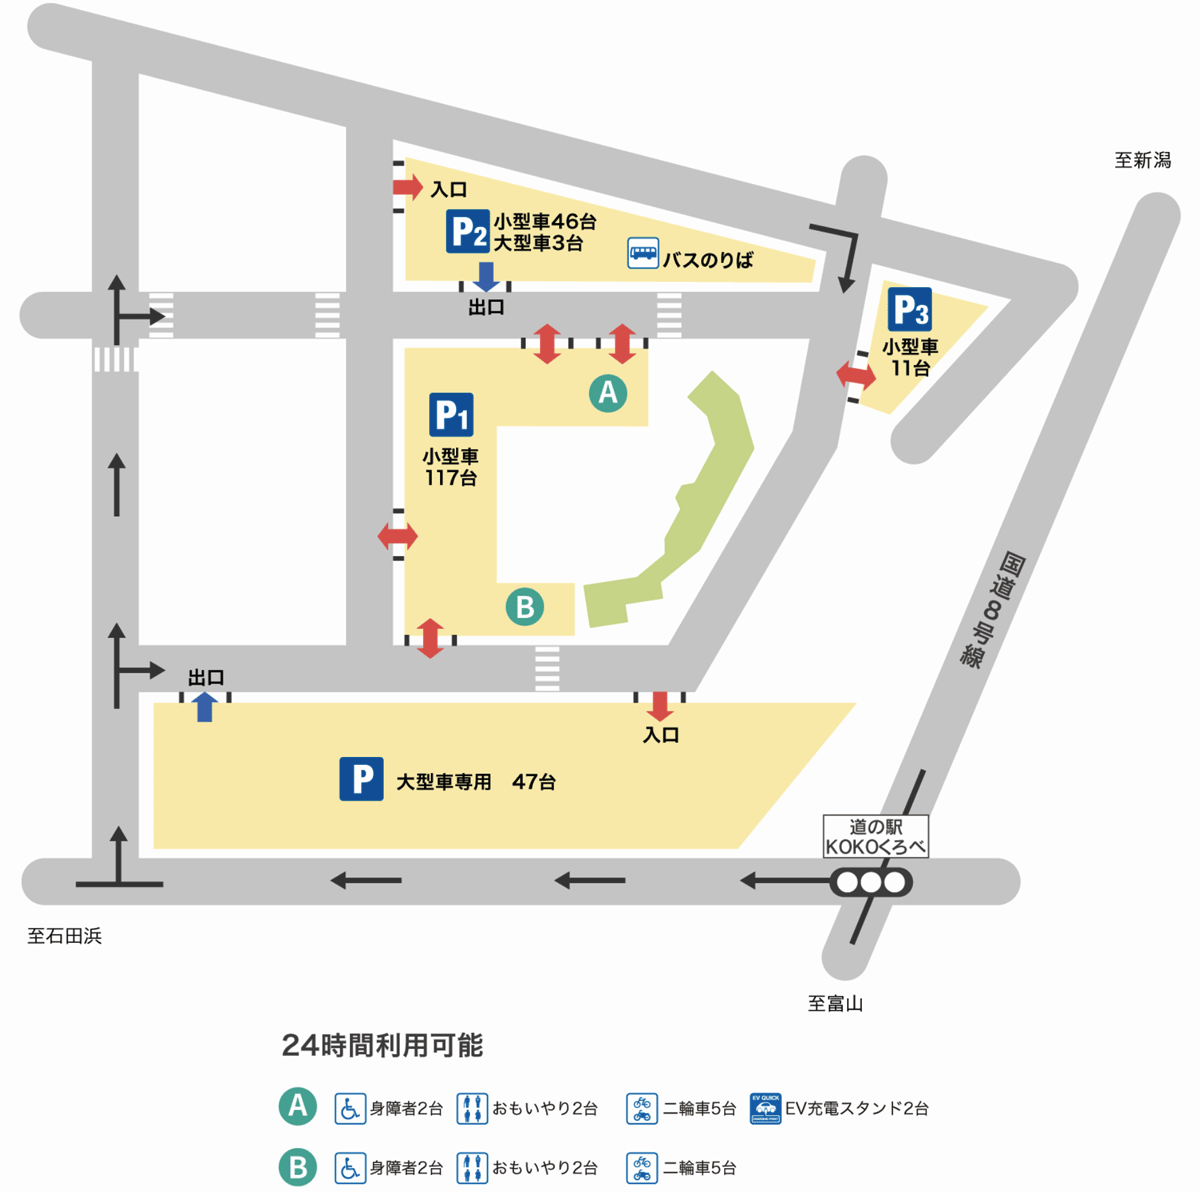 富山県黒部市の道の駅「KOKOくろべ」の駐車場マップ